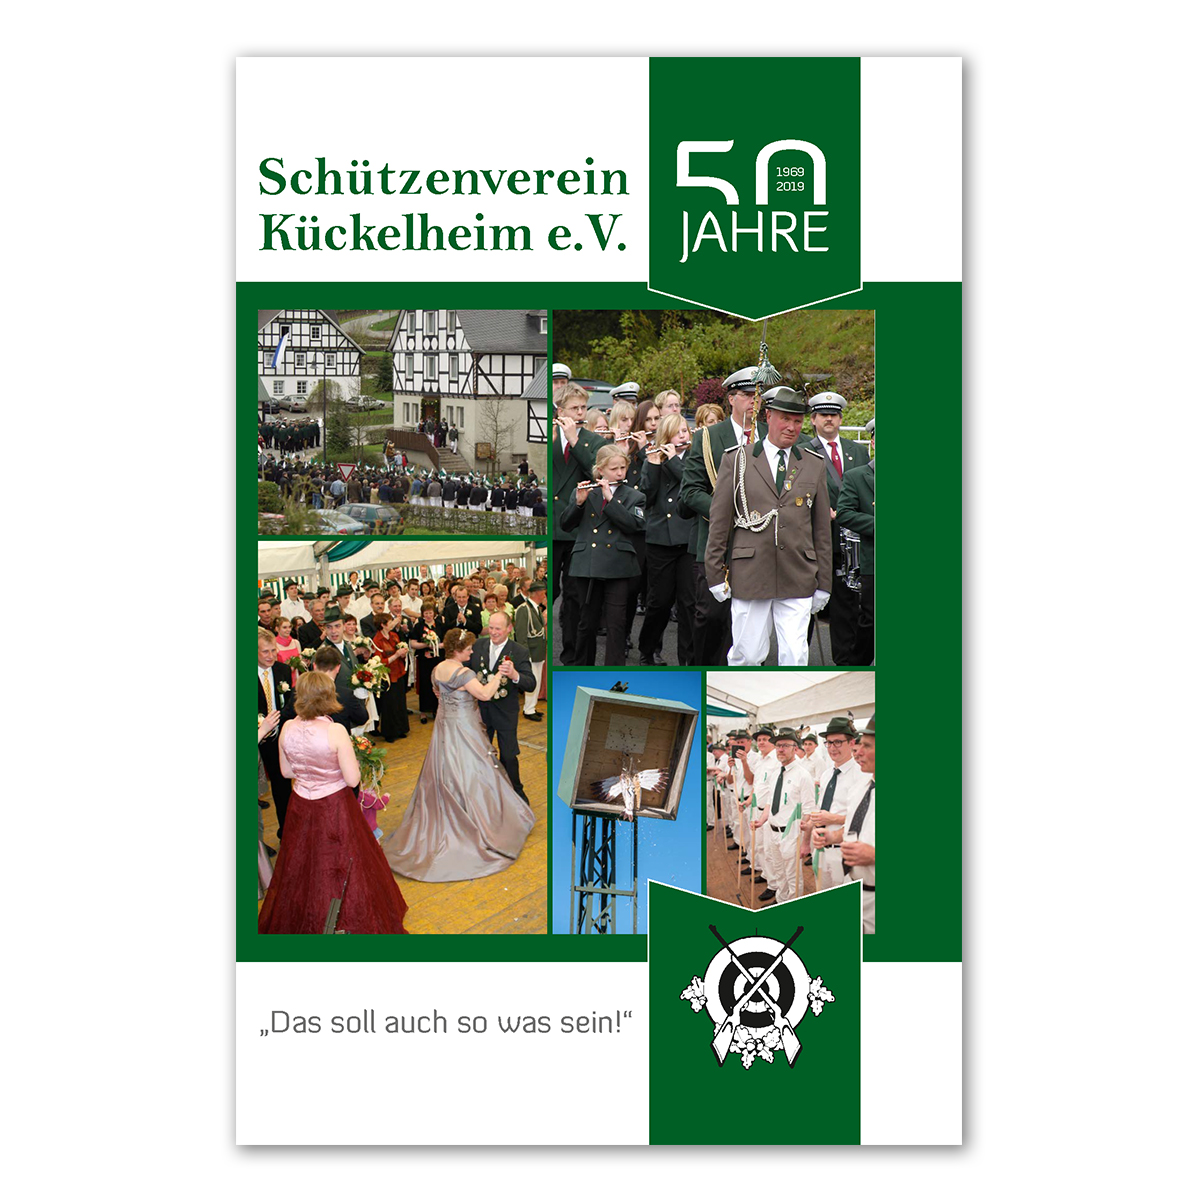 Schützenenverein Kückelheim e.V. – Das soll auch so was sein. (Schützenverein Kückelheim)